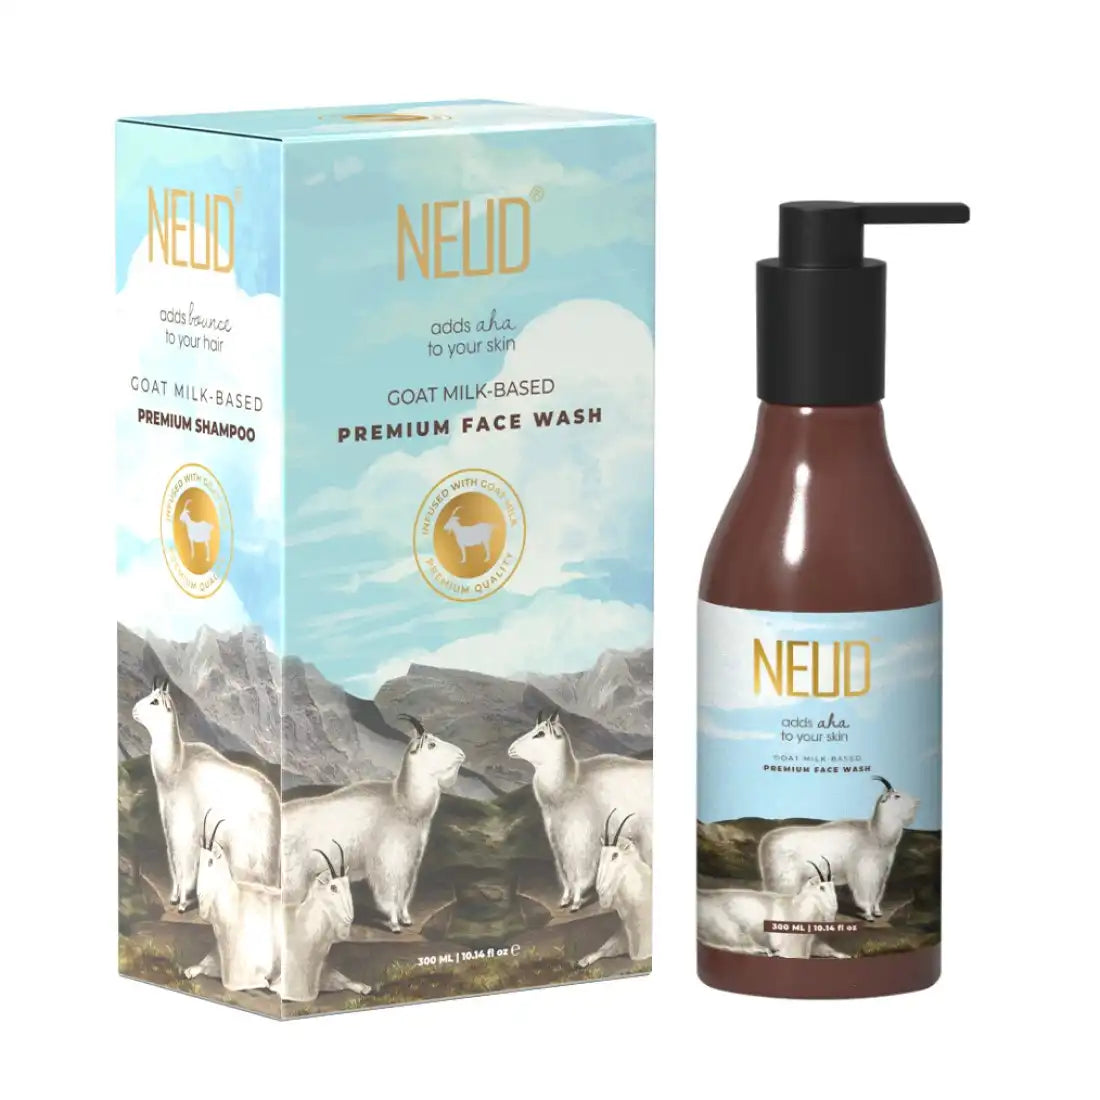 Nettoyant visage au lait de chèvre NEUD pour hommes et femmes - Pochette zippée gratuite